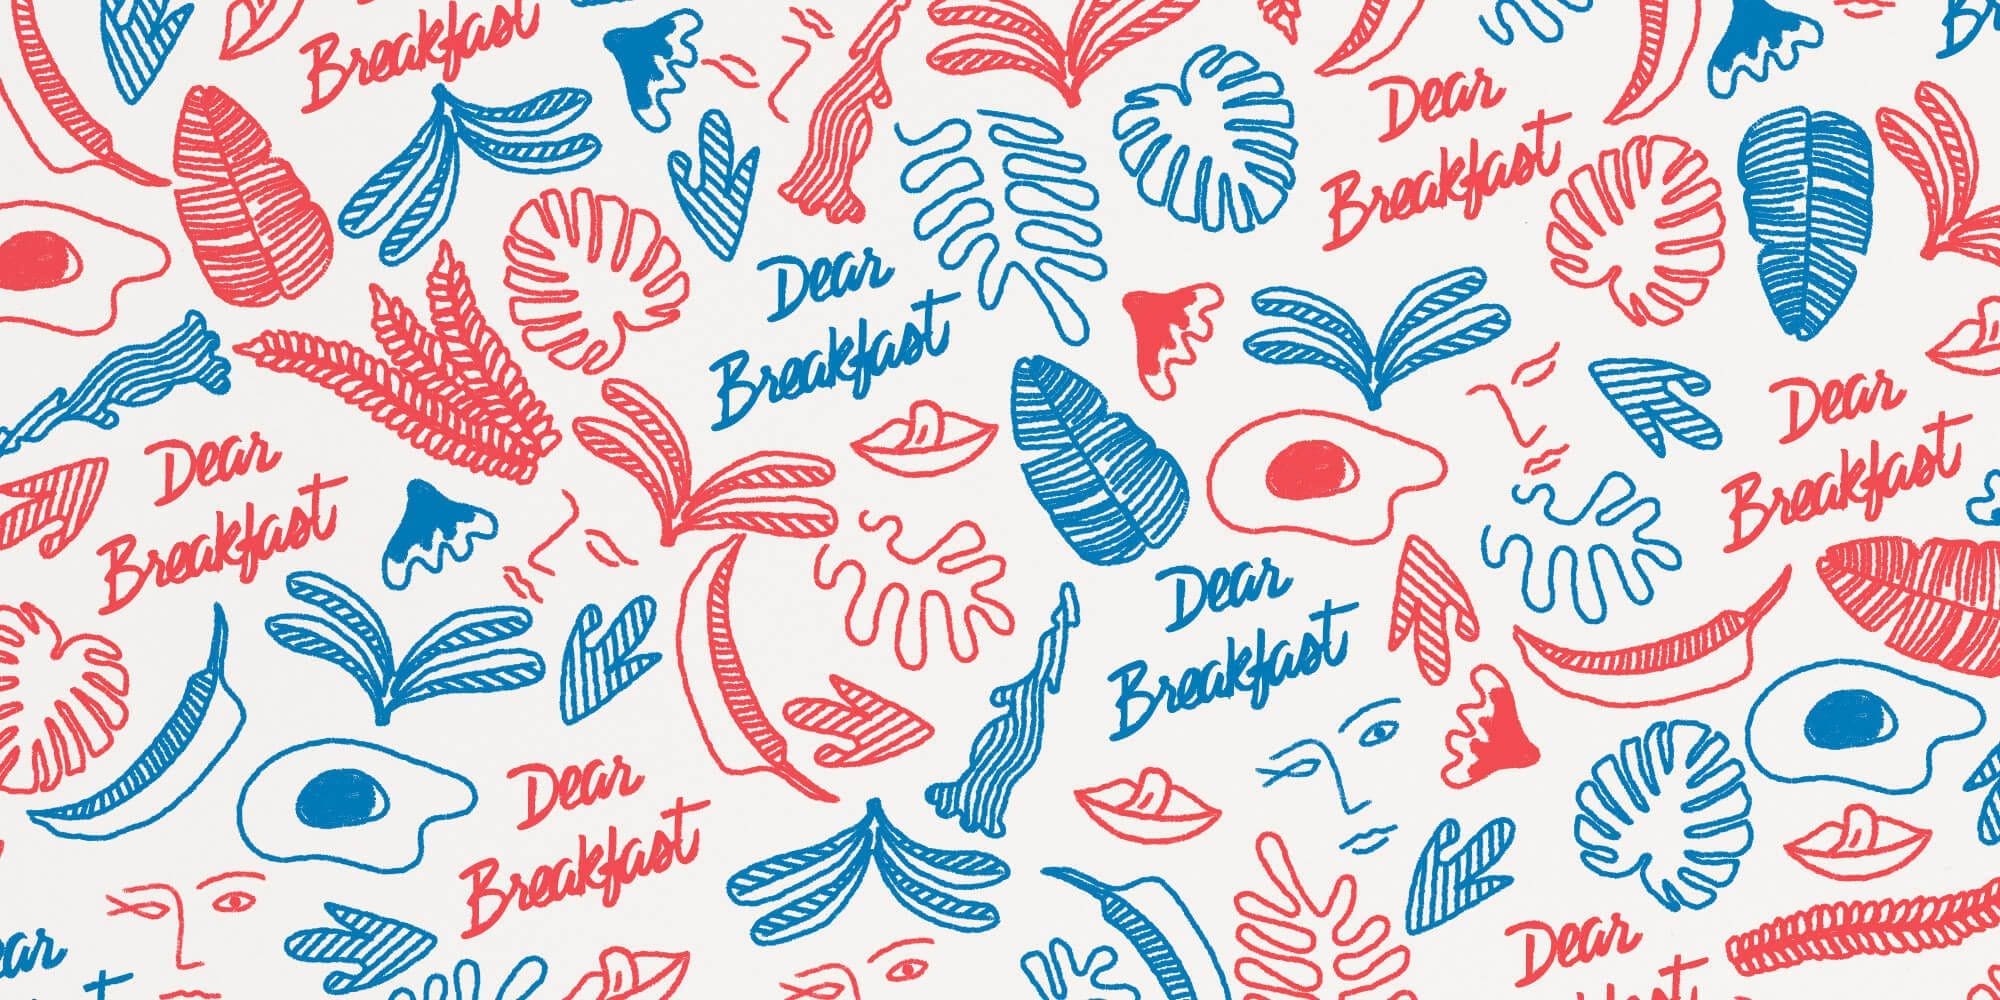 branding pattern dear breakfast